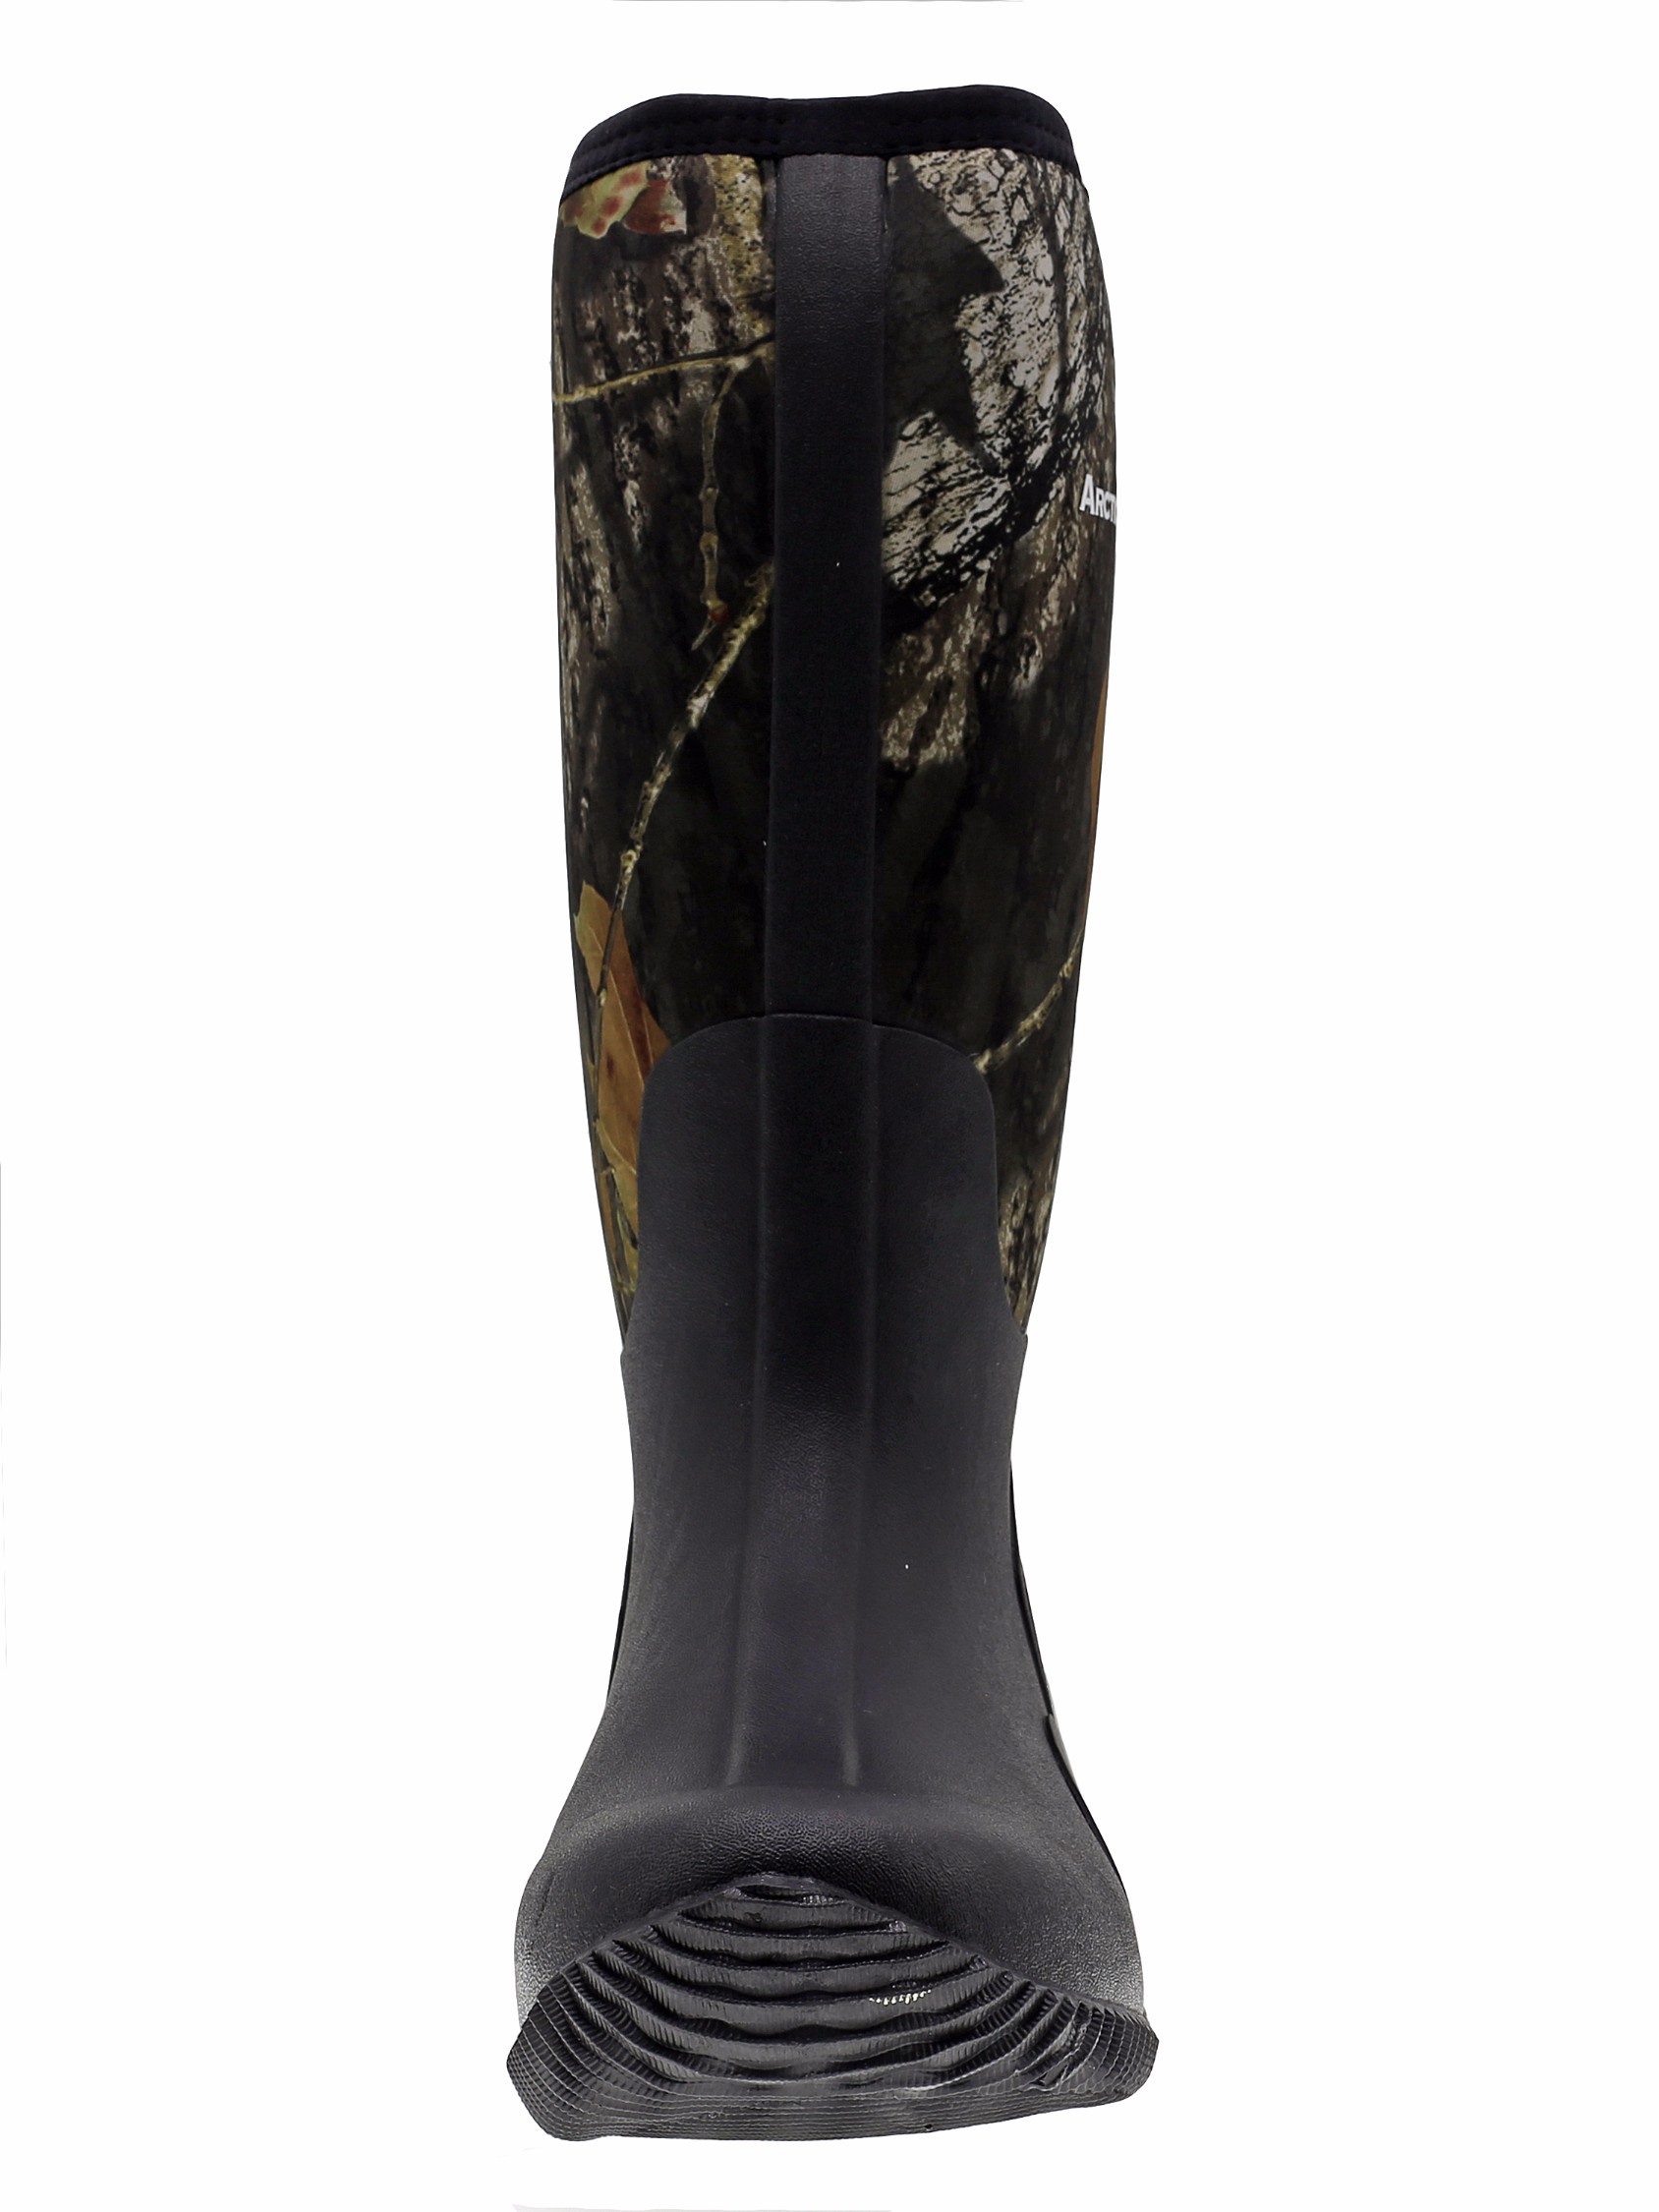 ArcticShield Men's Waterproof Durable Insulated Rubber Neoprene Outdoor Boots - image 4 of 6